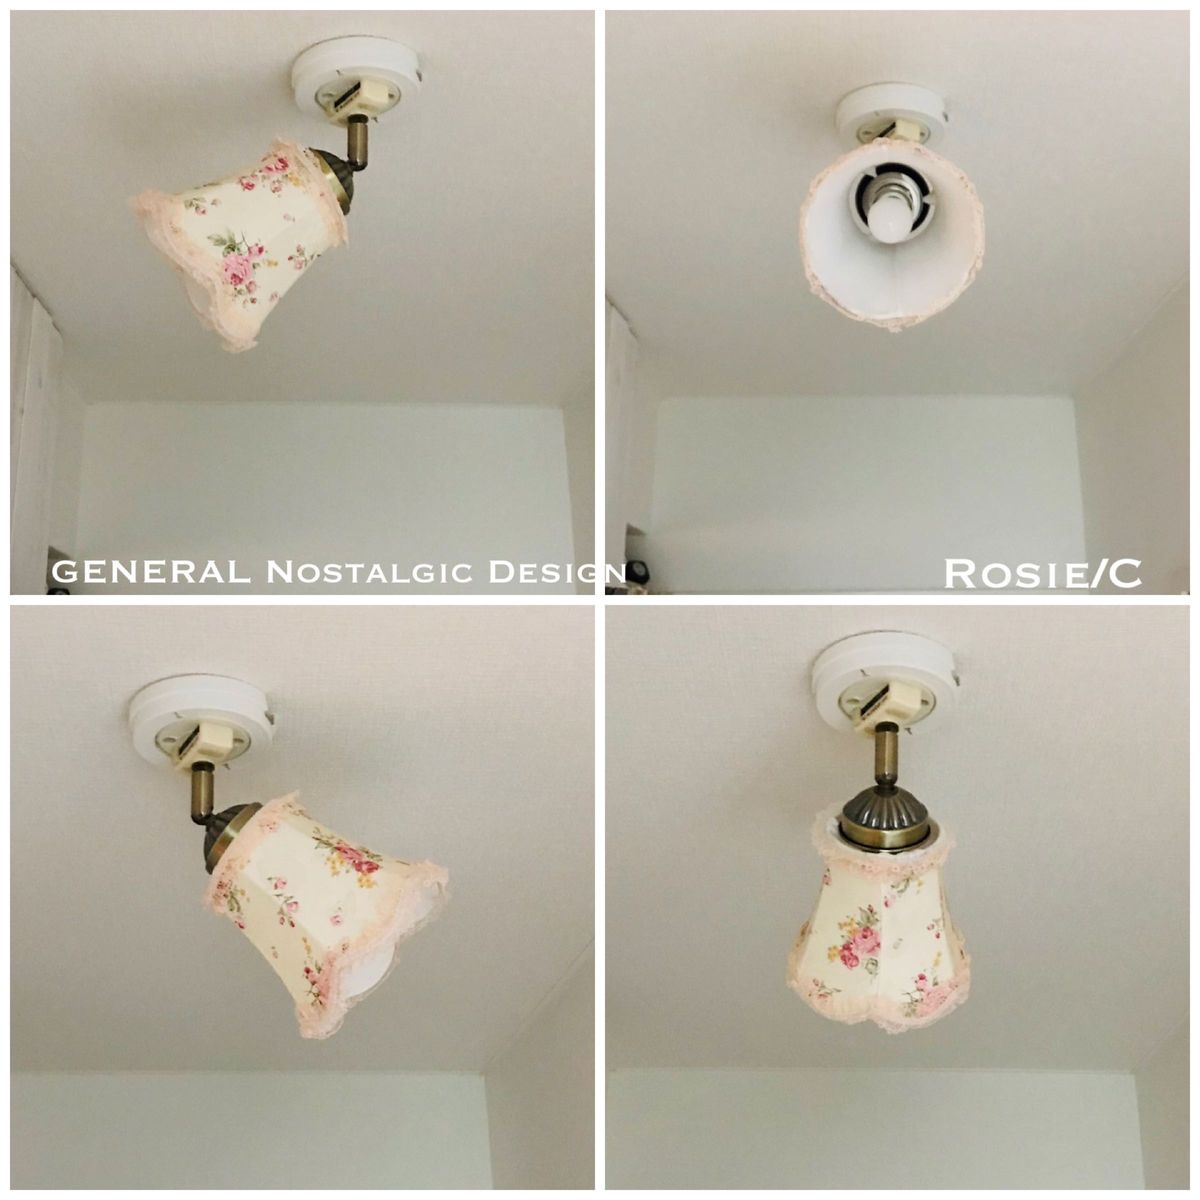 天井照明 Rosie/C シーリングライト 花柄生地 ランプシェード E17ソケット LED電球専用 簡単取付 インテリア 照明